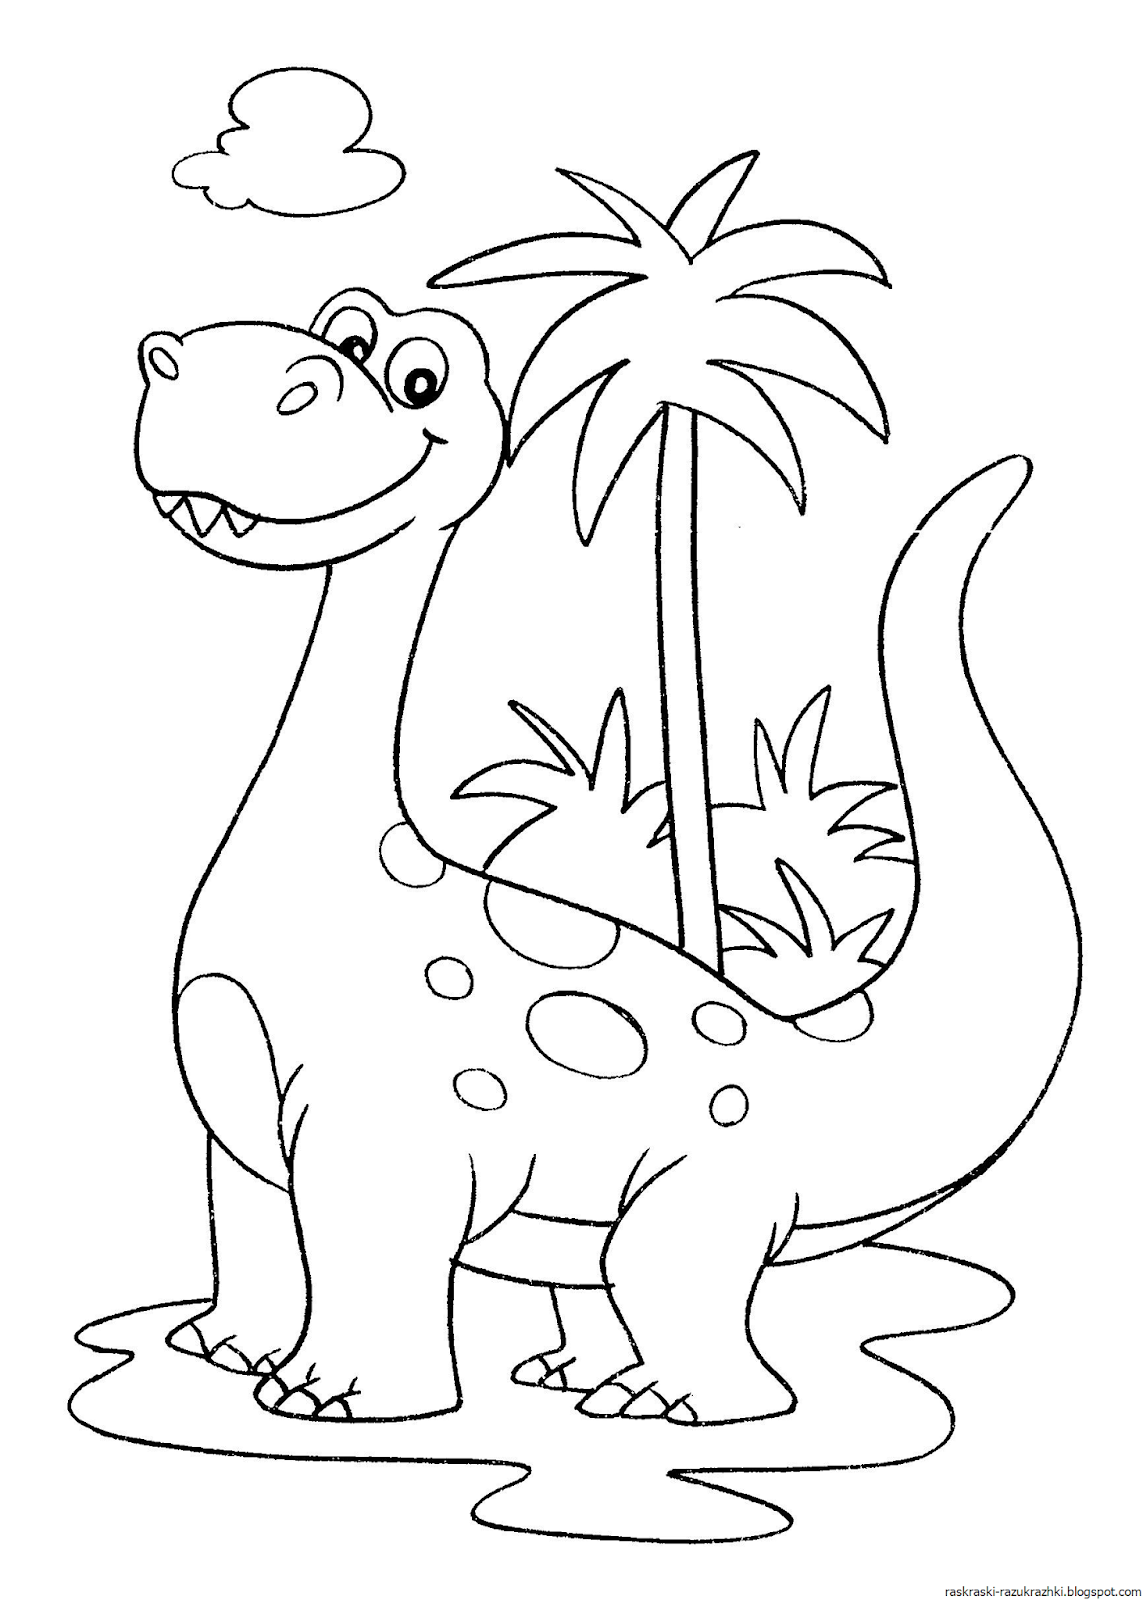 Раскраска динозавр формат а4. Динозавры / раскраска. Динозавр раскраска для детей. Динозавры для раскрашивания детям. Раскраска дизонавр для детей.